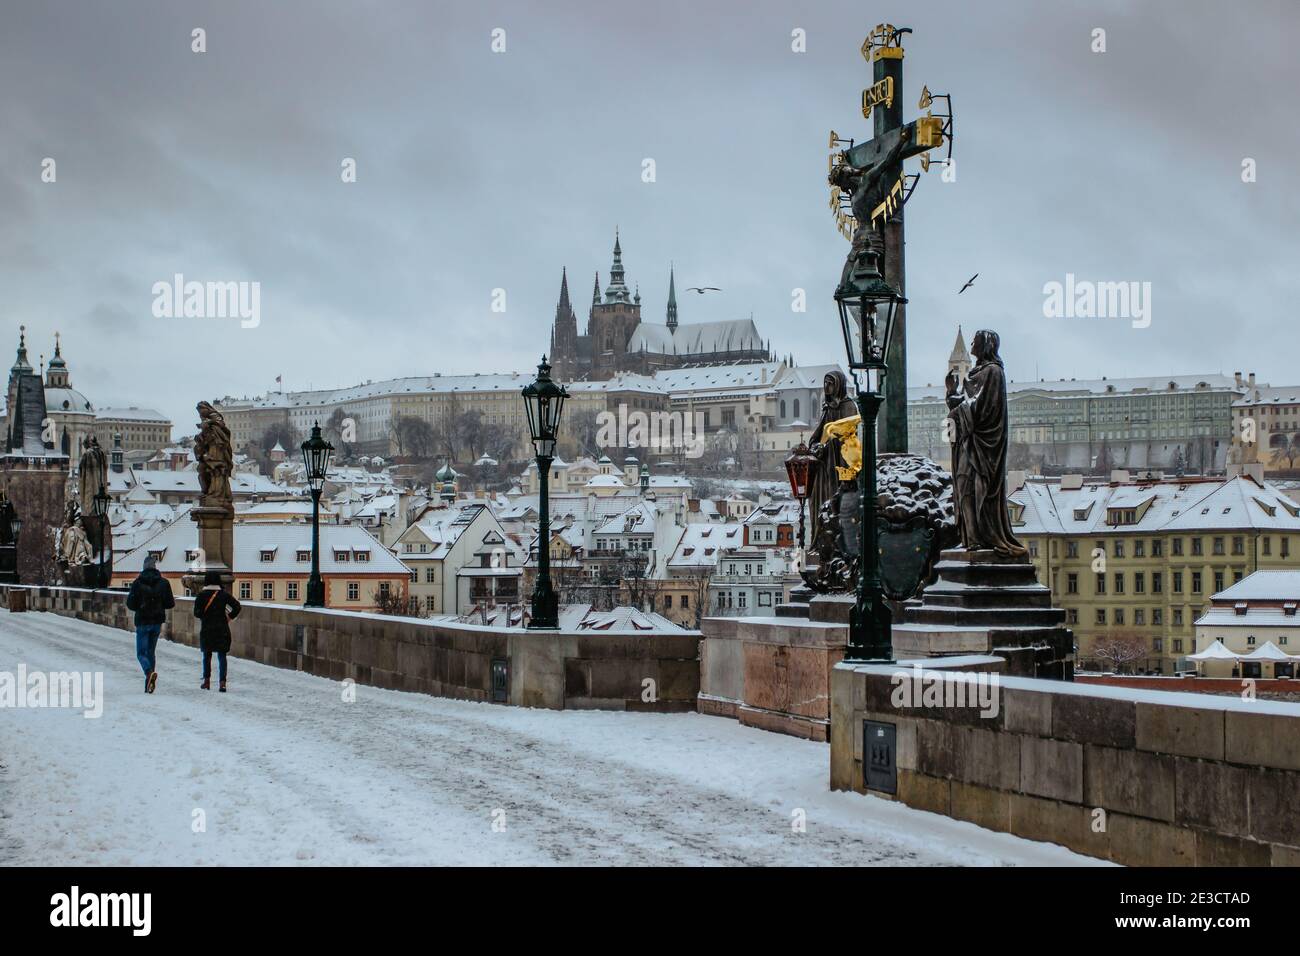 Postkarte Ansicht der Prager Burg von der Karlsbrücke, Tschechische republik.berühmte touristische Destination.Prag Winterpanorama.Snowy Tag in der Stadt.Amazing Stockfoto